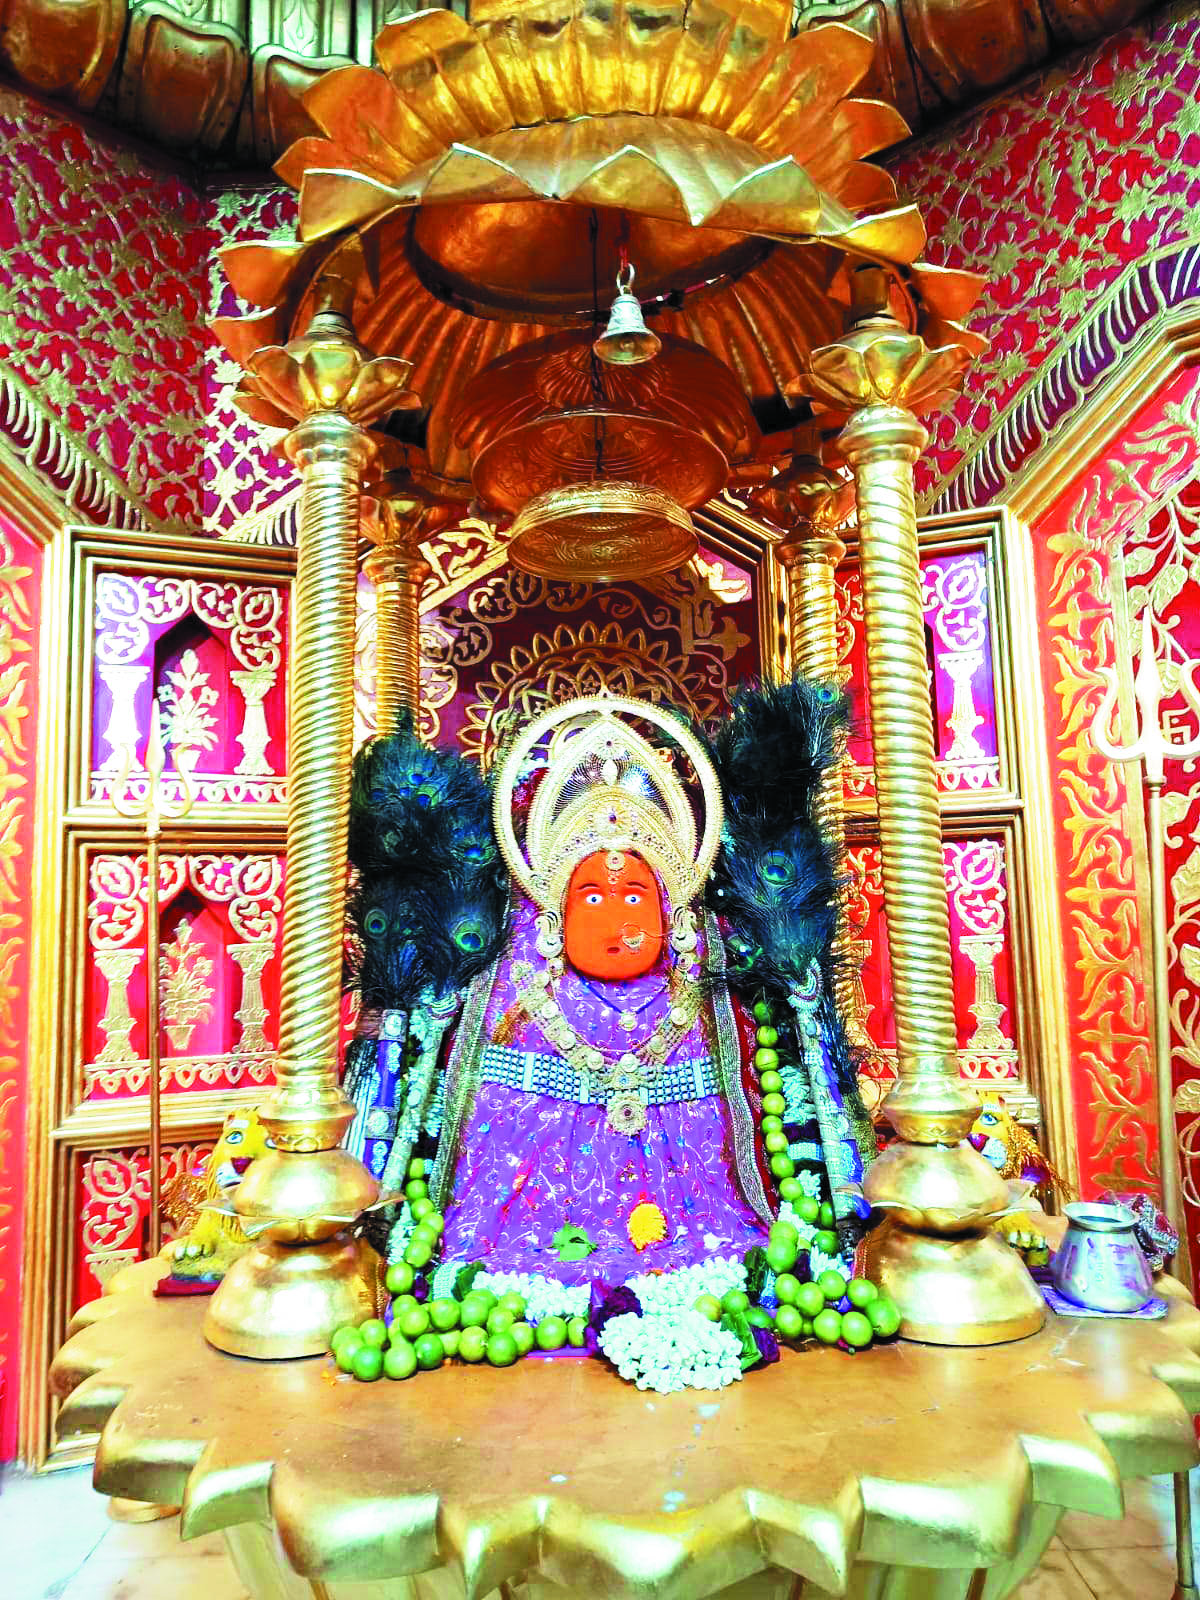 नागपुर के चांडक परिवार ने मां बम्लेश्वरी को भेंट किया आधा किलो सोने का मुकुट